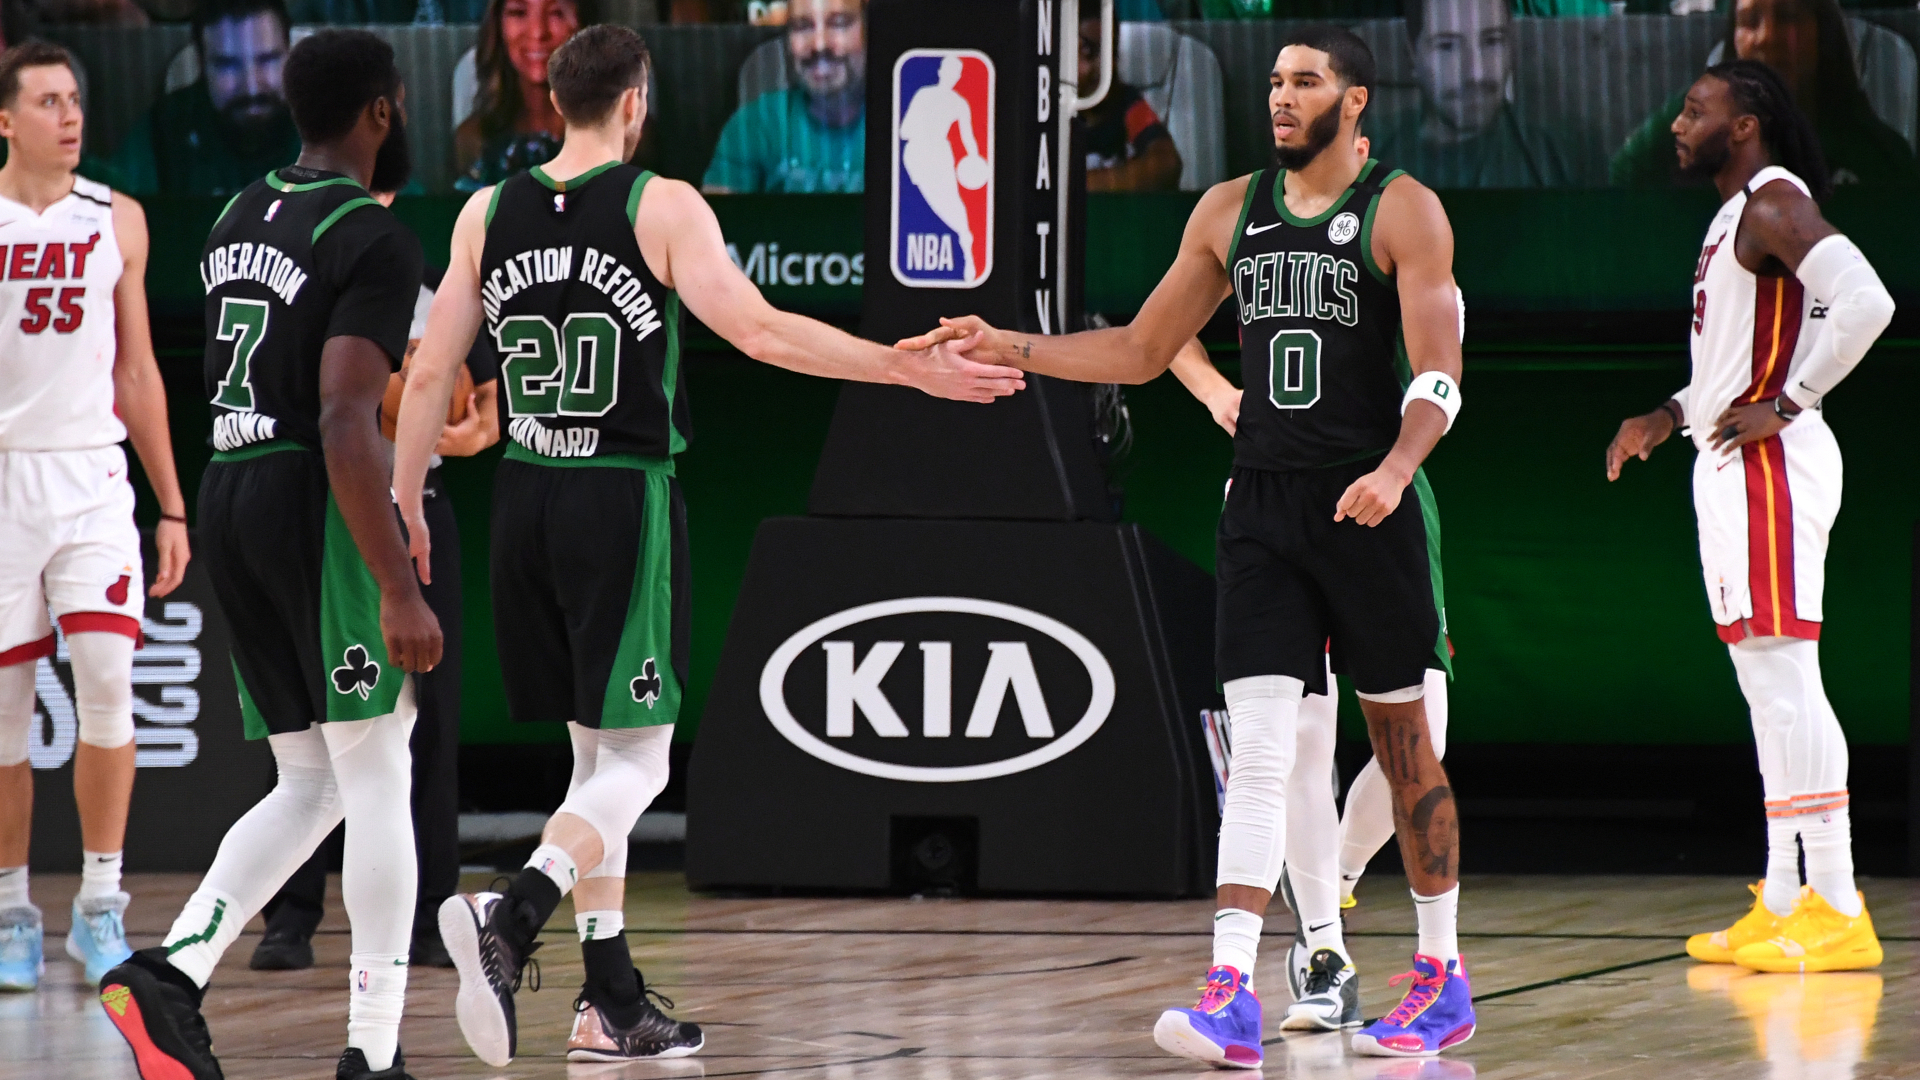 Boston Celtics head coach Brad Stevens discussed the Game 5 win over the Miami Heat.